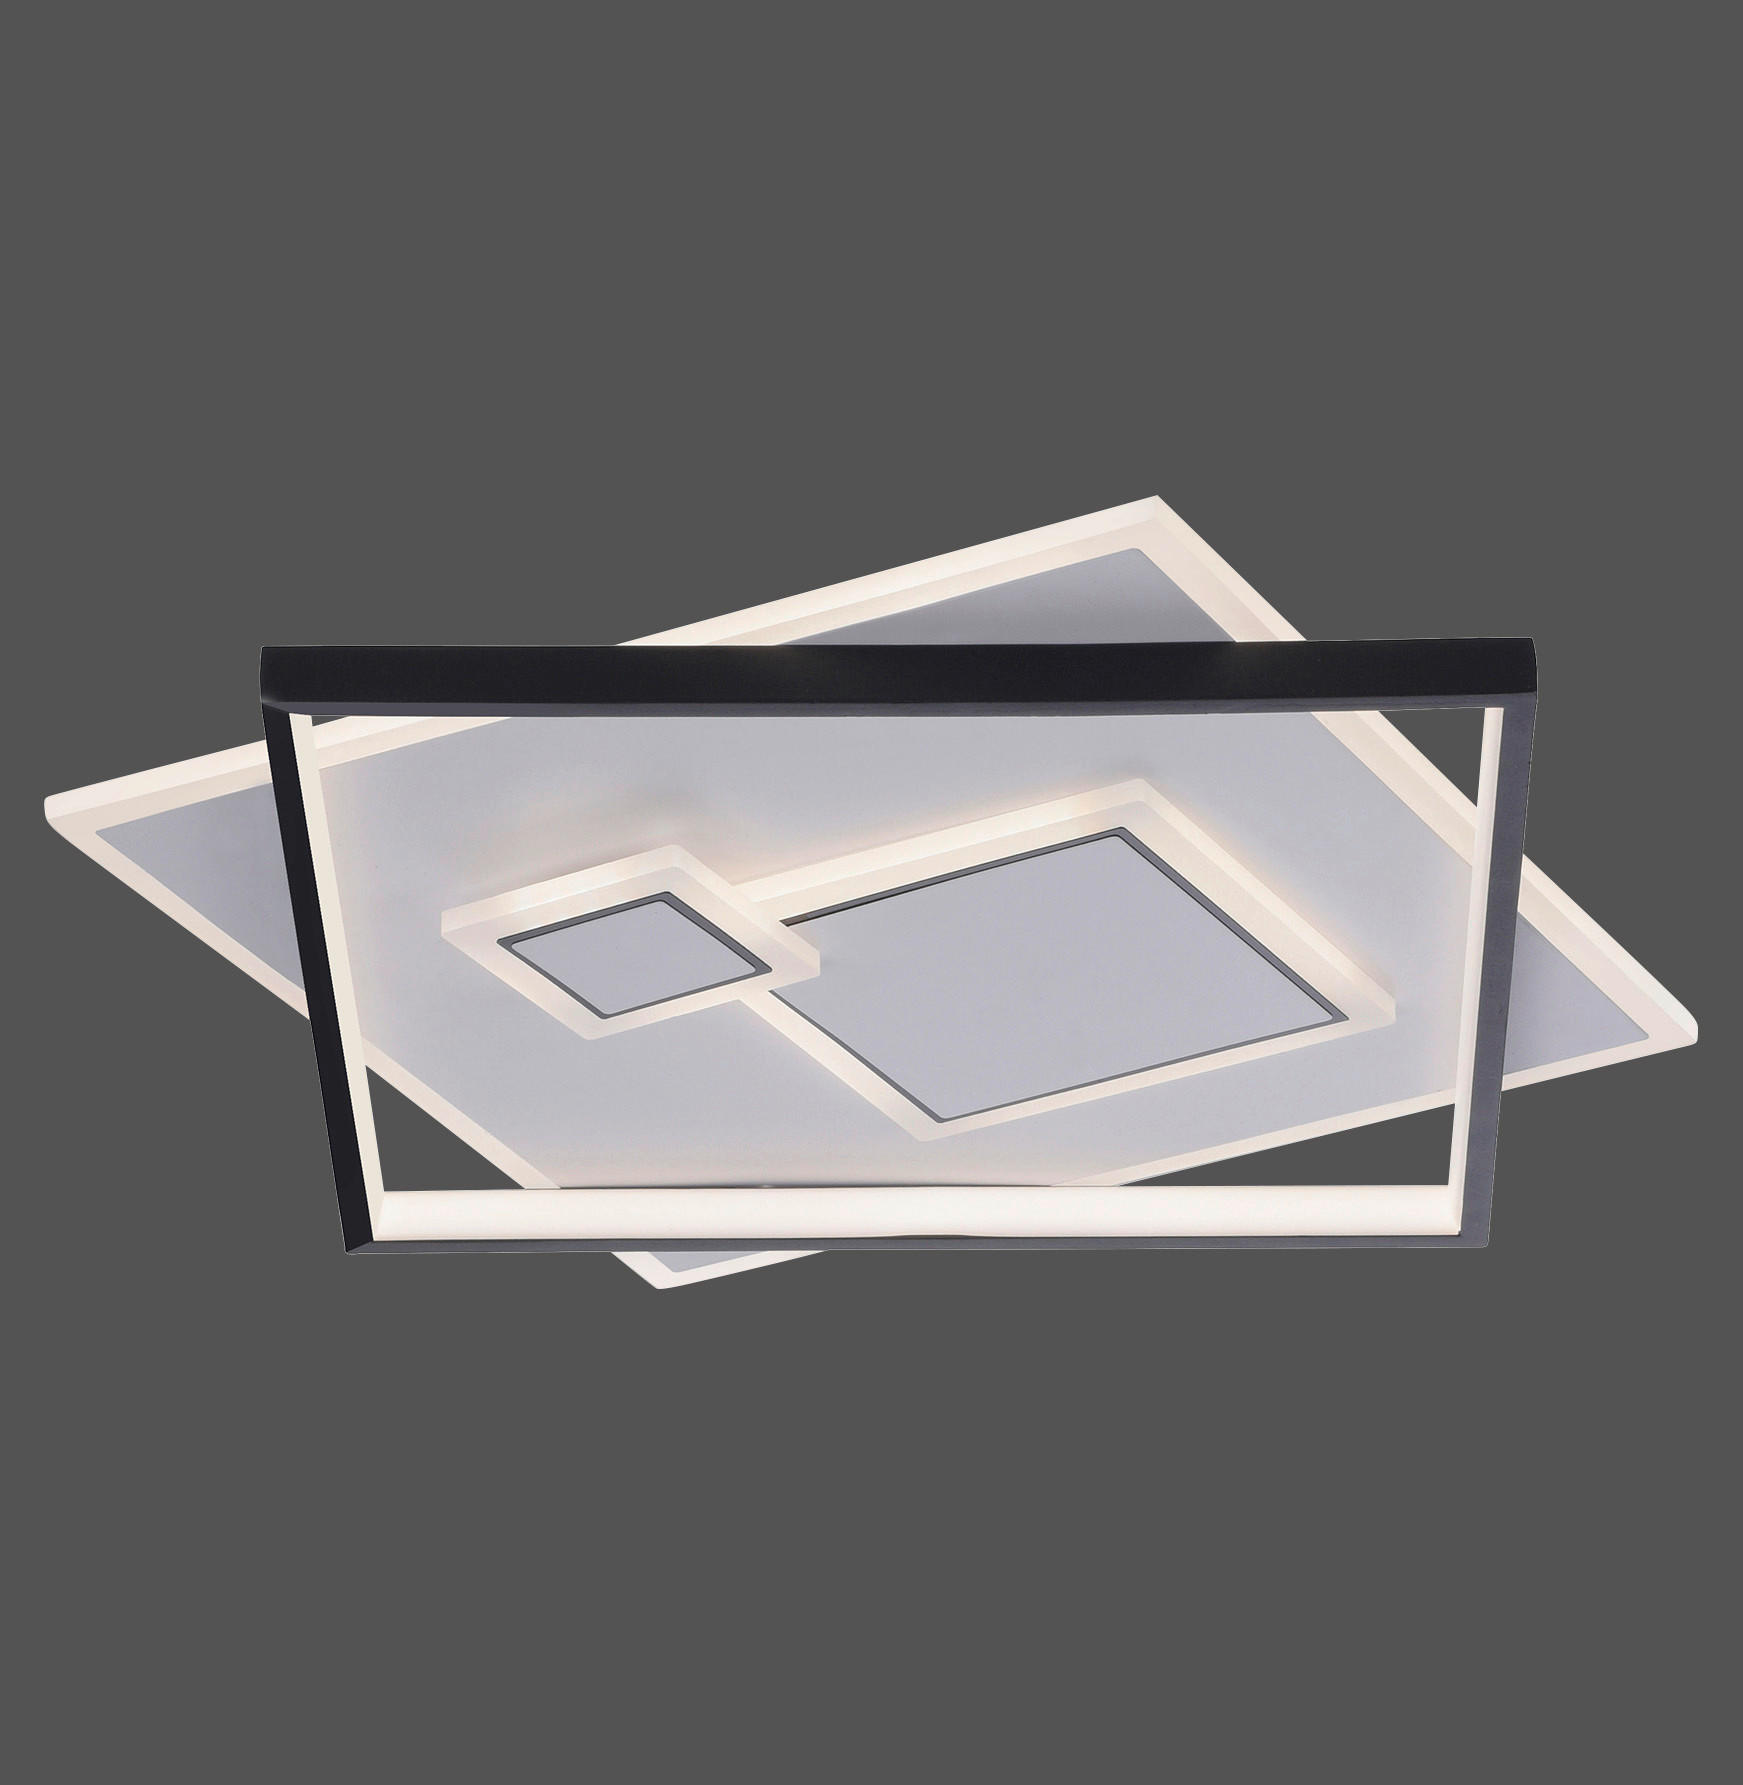 LED-DECKENLEUCHTE Mailak 57/57/6 cm   - Design, Kunststoff/Metall (57/57/6cm) - Paul Neuhaus